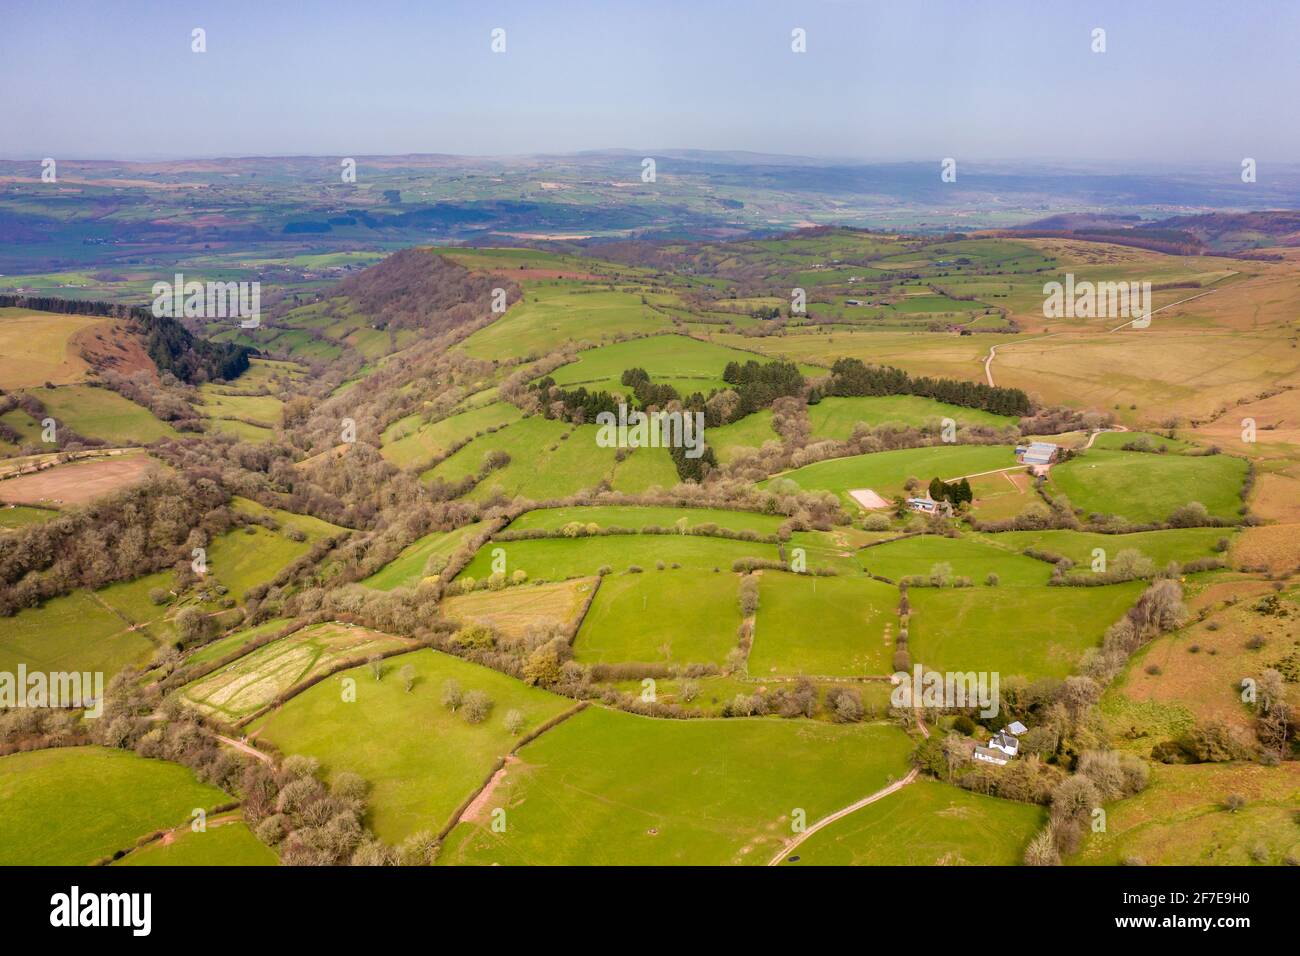 Vue aérienne sur les terres agricoles et les collines rurales du pays de Galles (Hay Bluff sur la frontière gallois/anglais) Banque D'Images